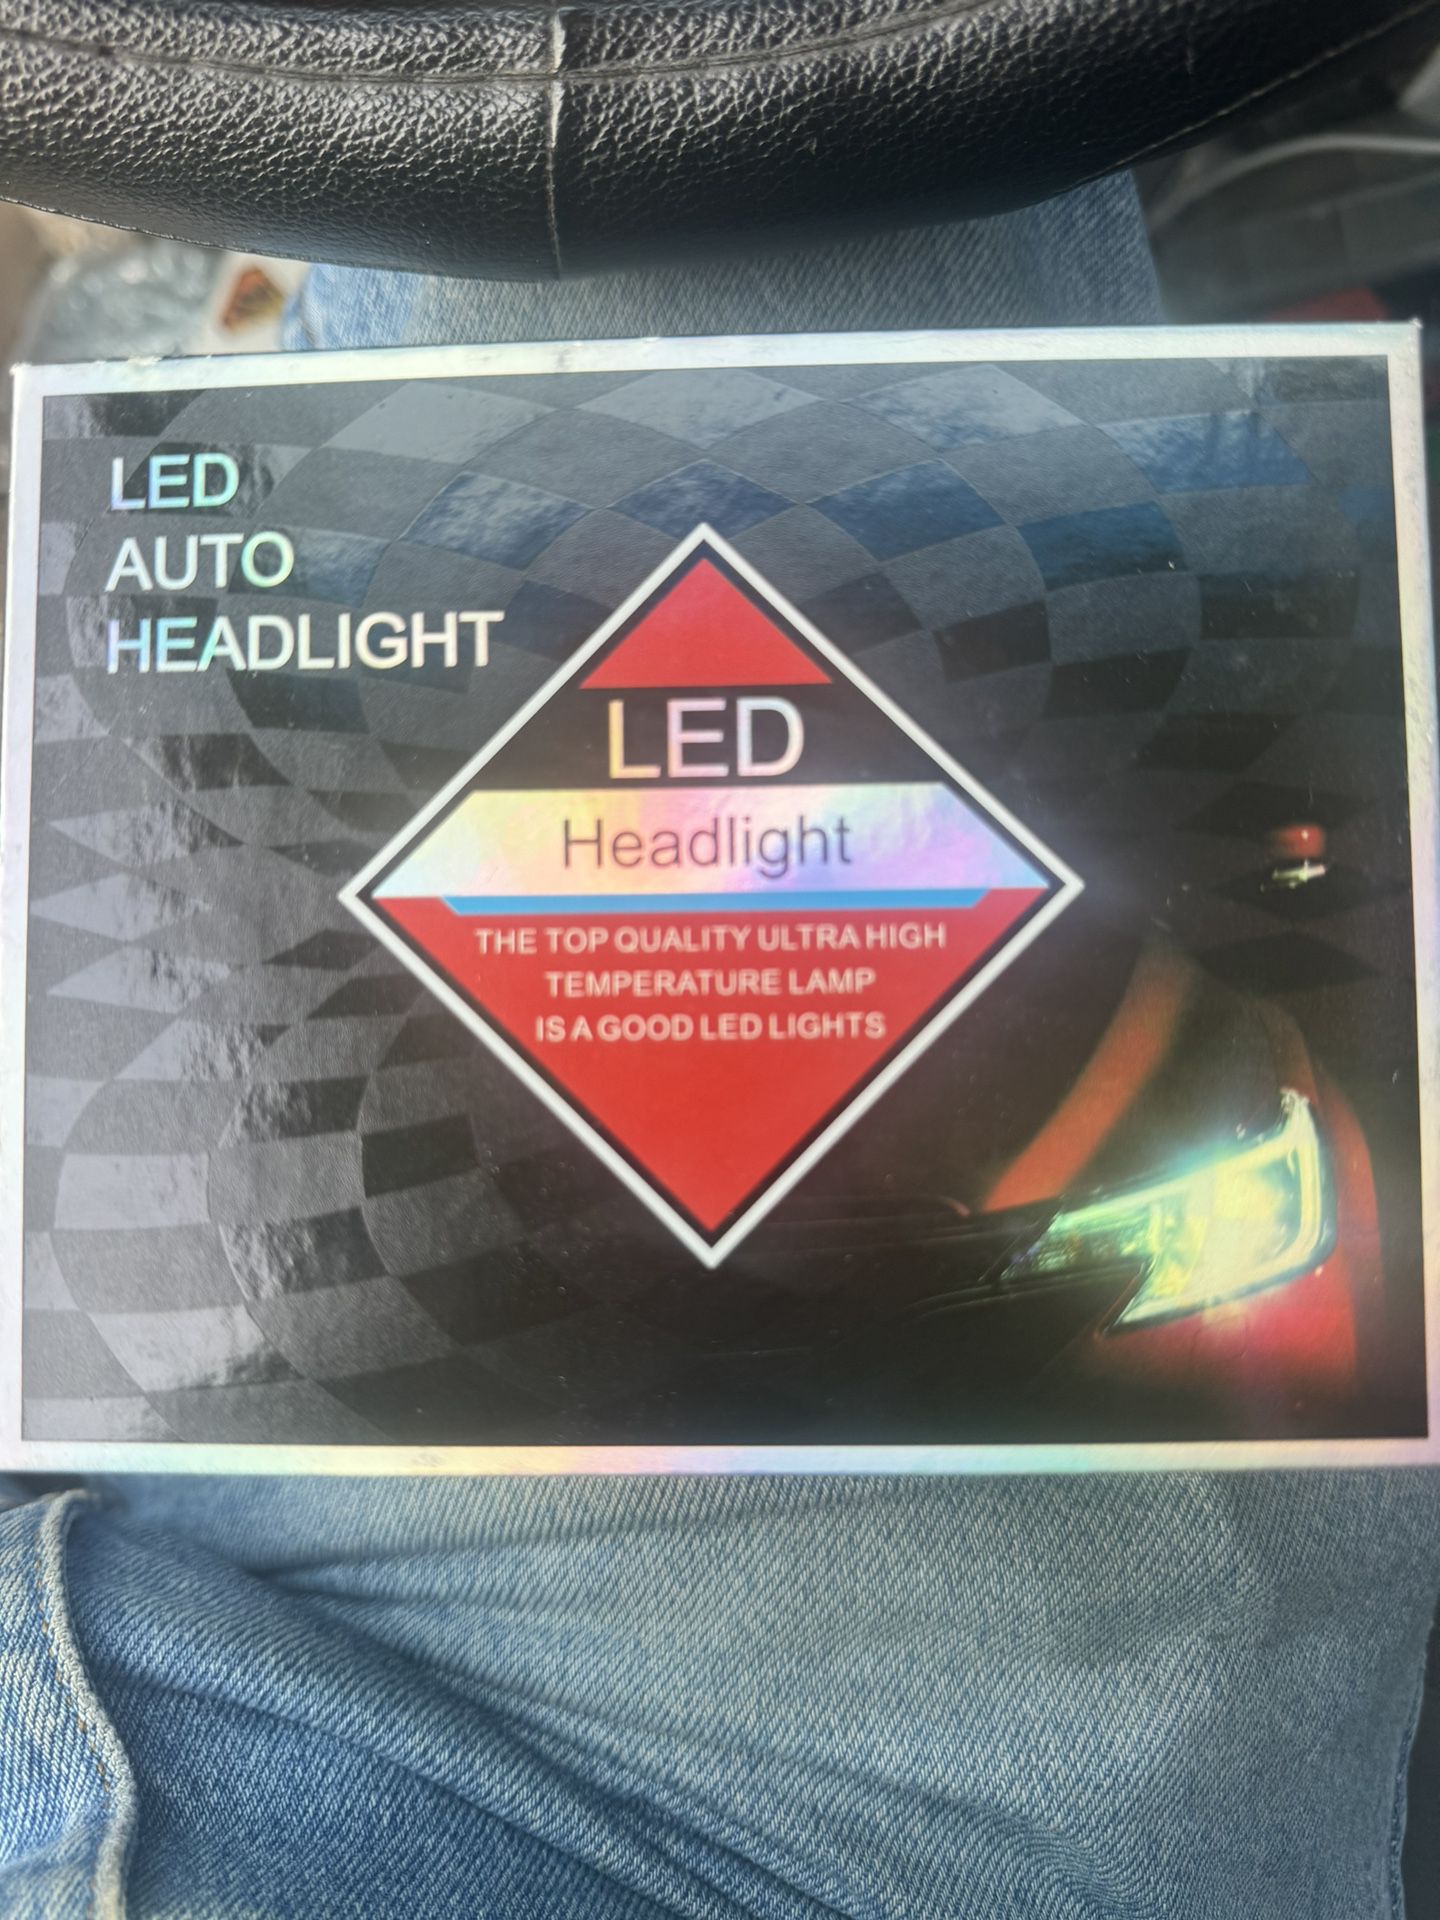 Car Led Light 